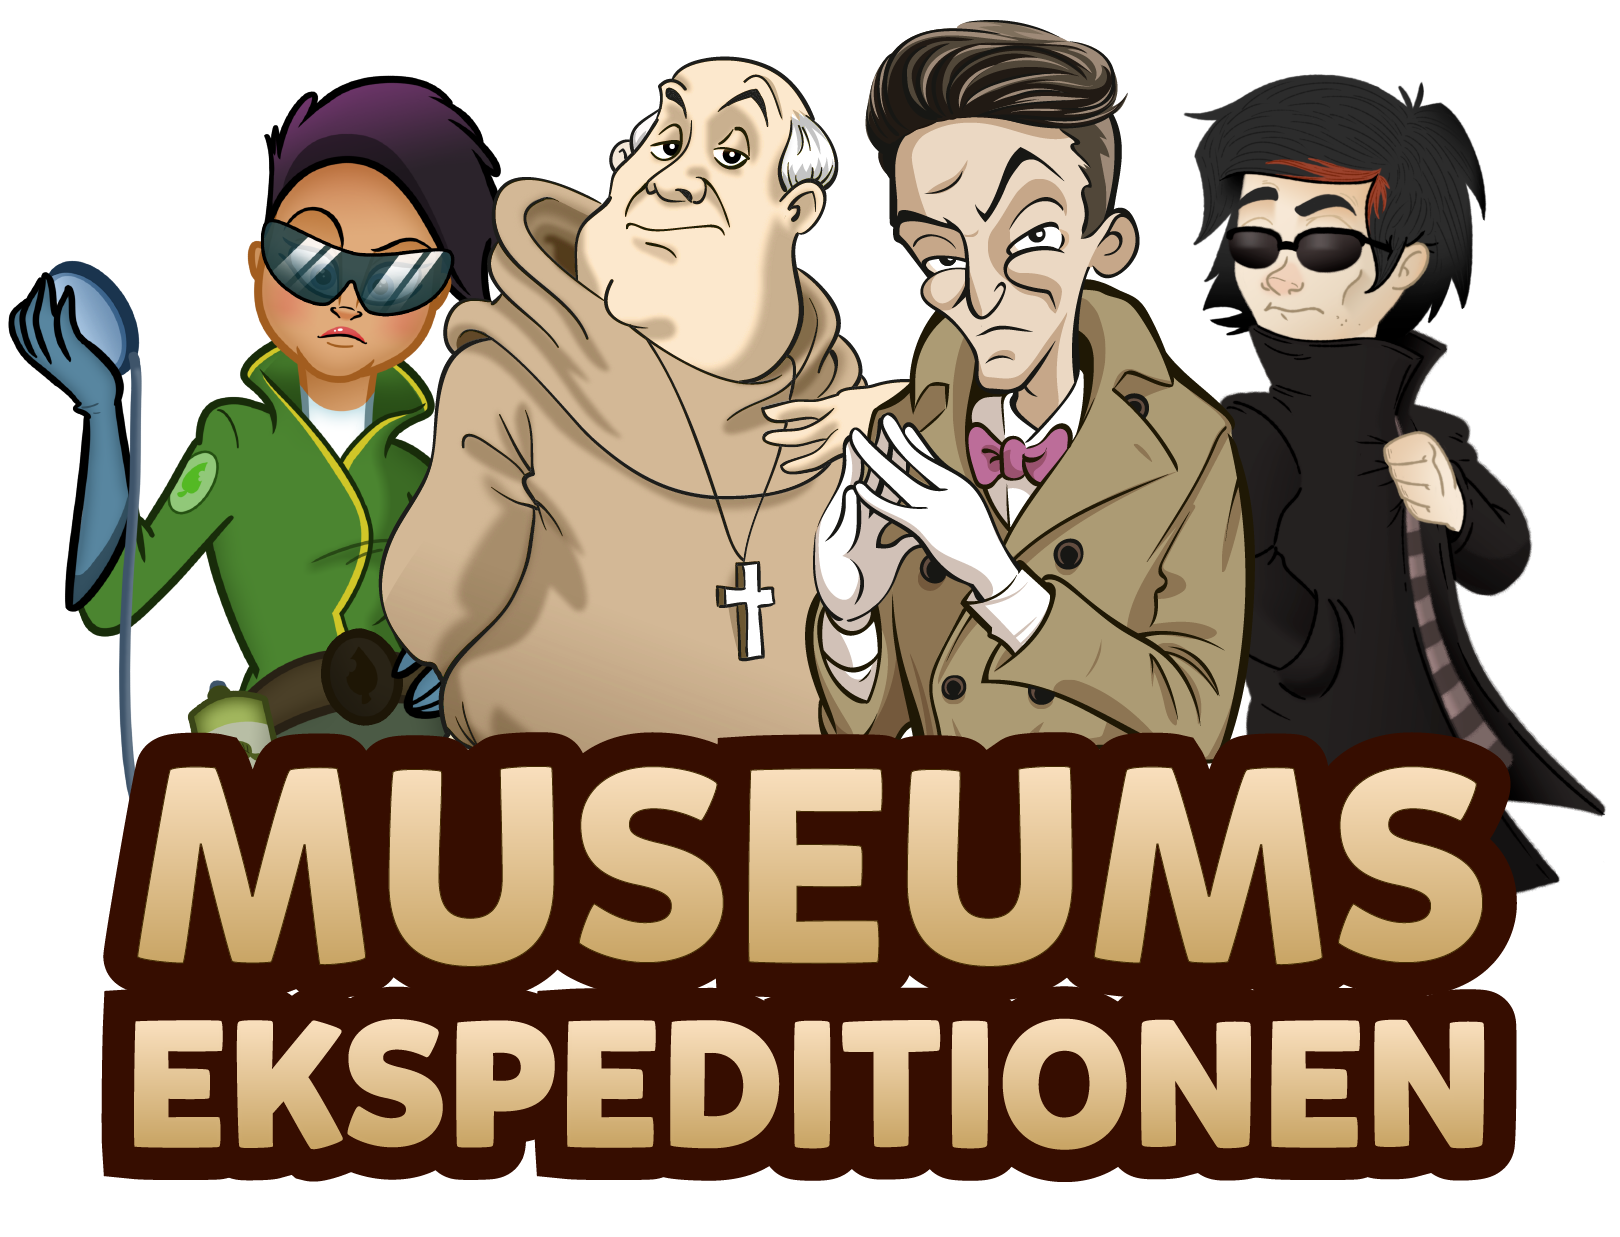 MuseumsEkspeditionen 2020 er i gang